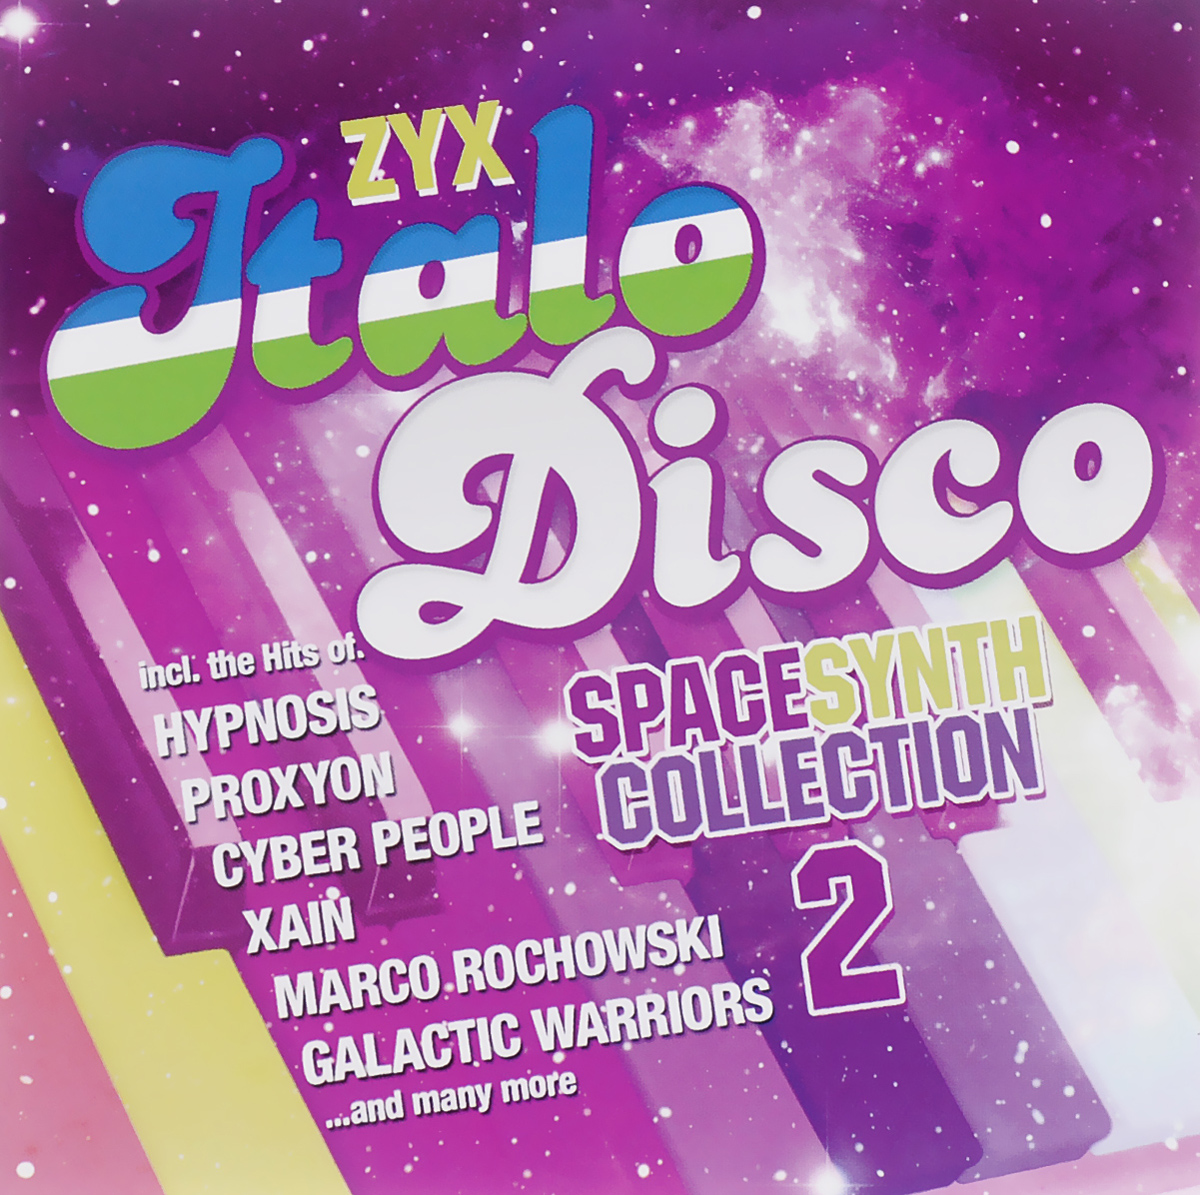 Zyx Italo Disco Spacesynth Collection 2 (2 CD)